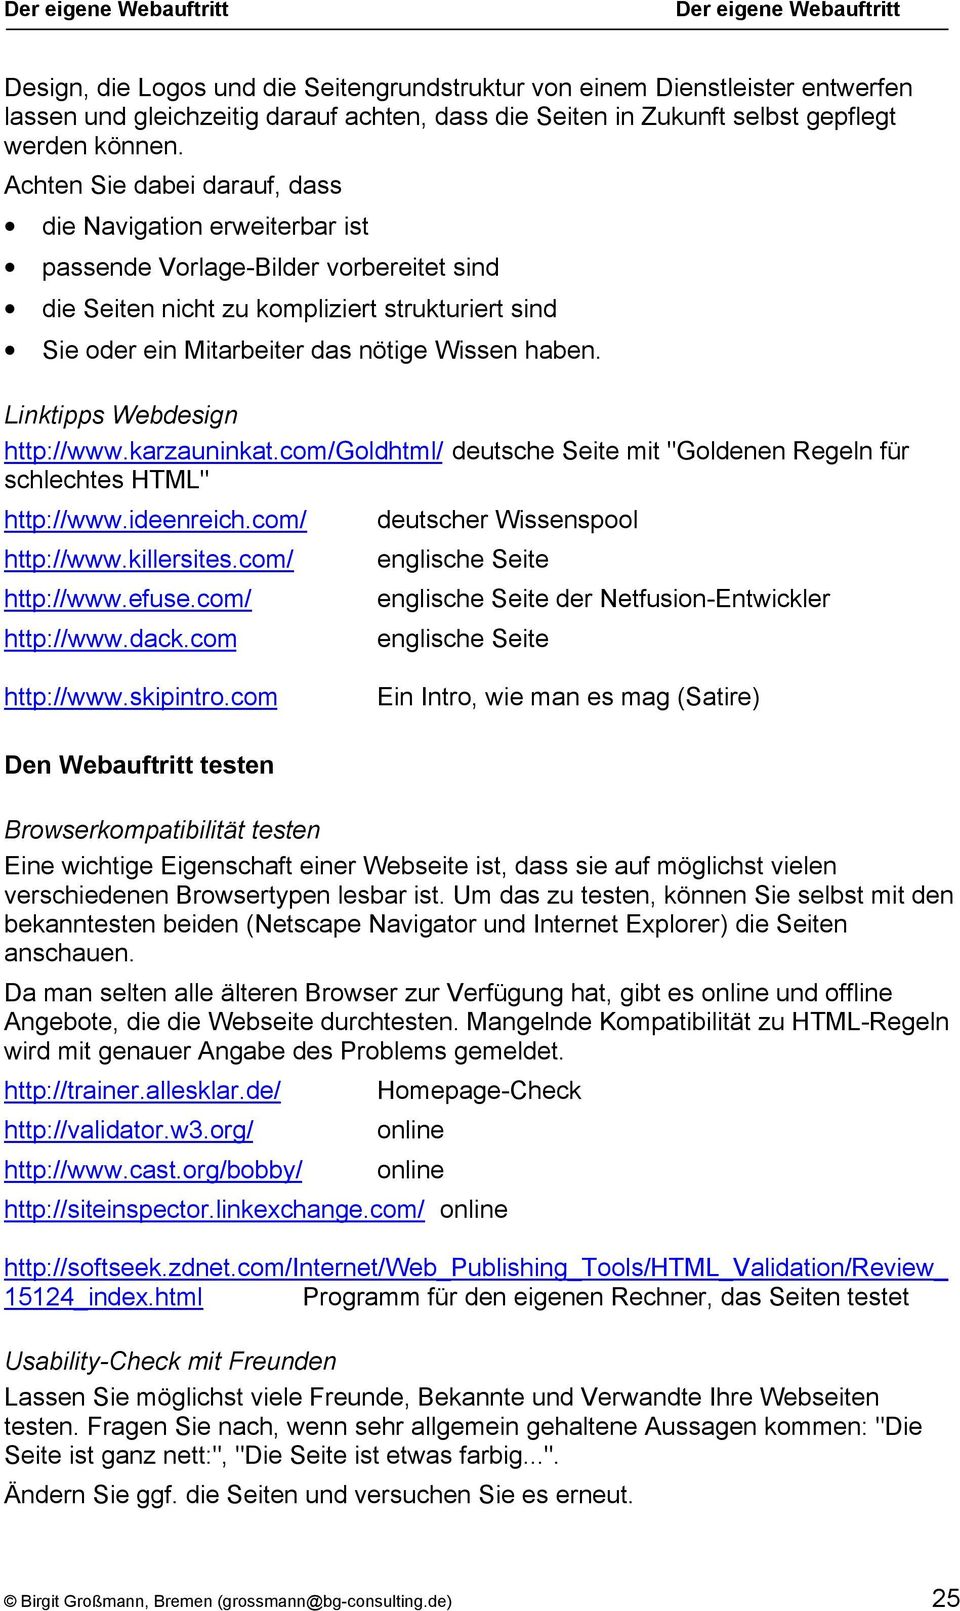 haben. Linktipps Webdesign http://www.karzauninkat.com/goldhtml/ deutsche Seite mit "Goldenen Regeln für schlechtes HTML" http://www.ideenreich.com/ http://www.killersites.com/ http://www.efuse.